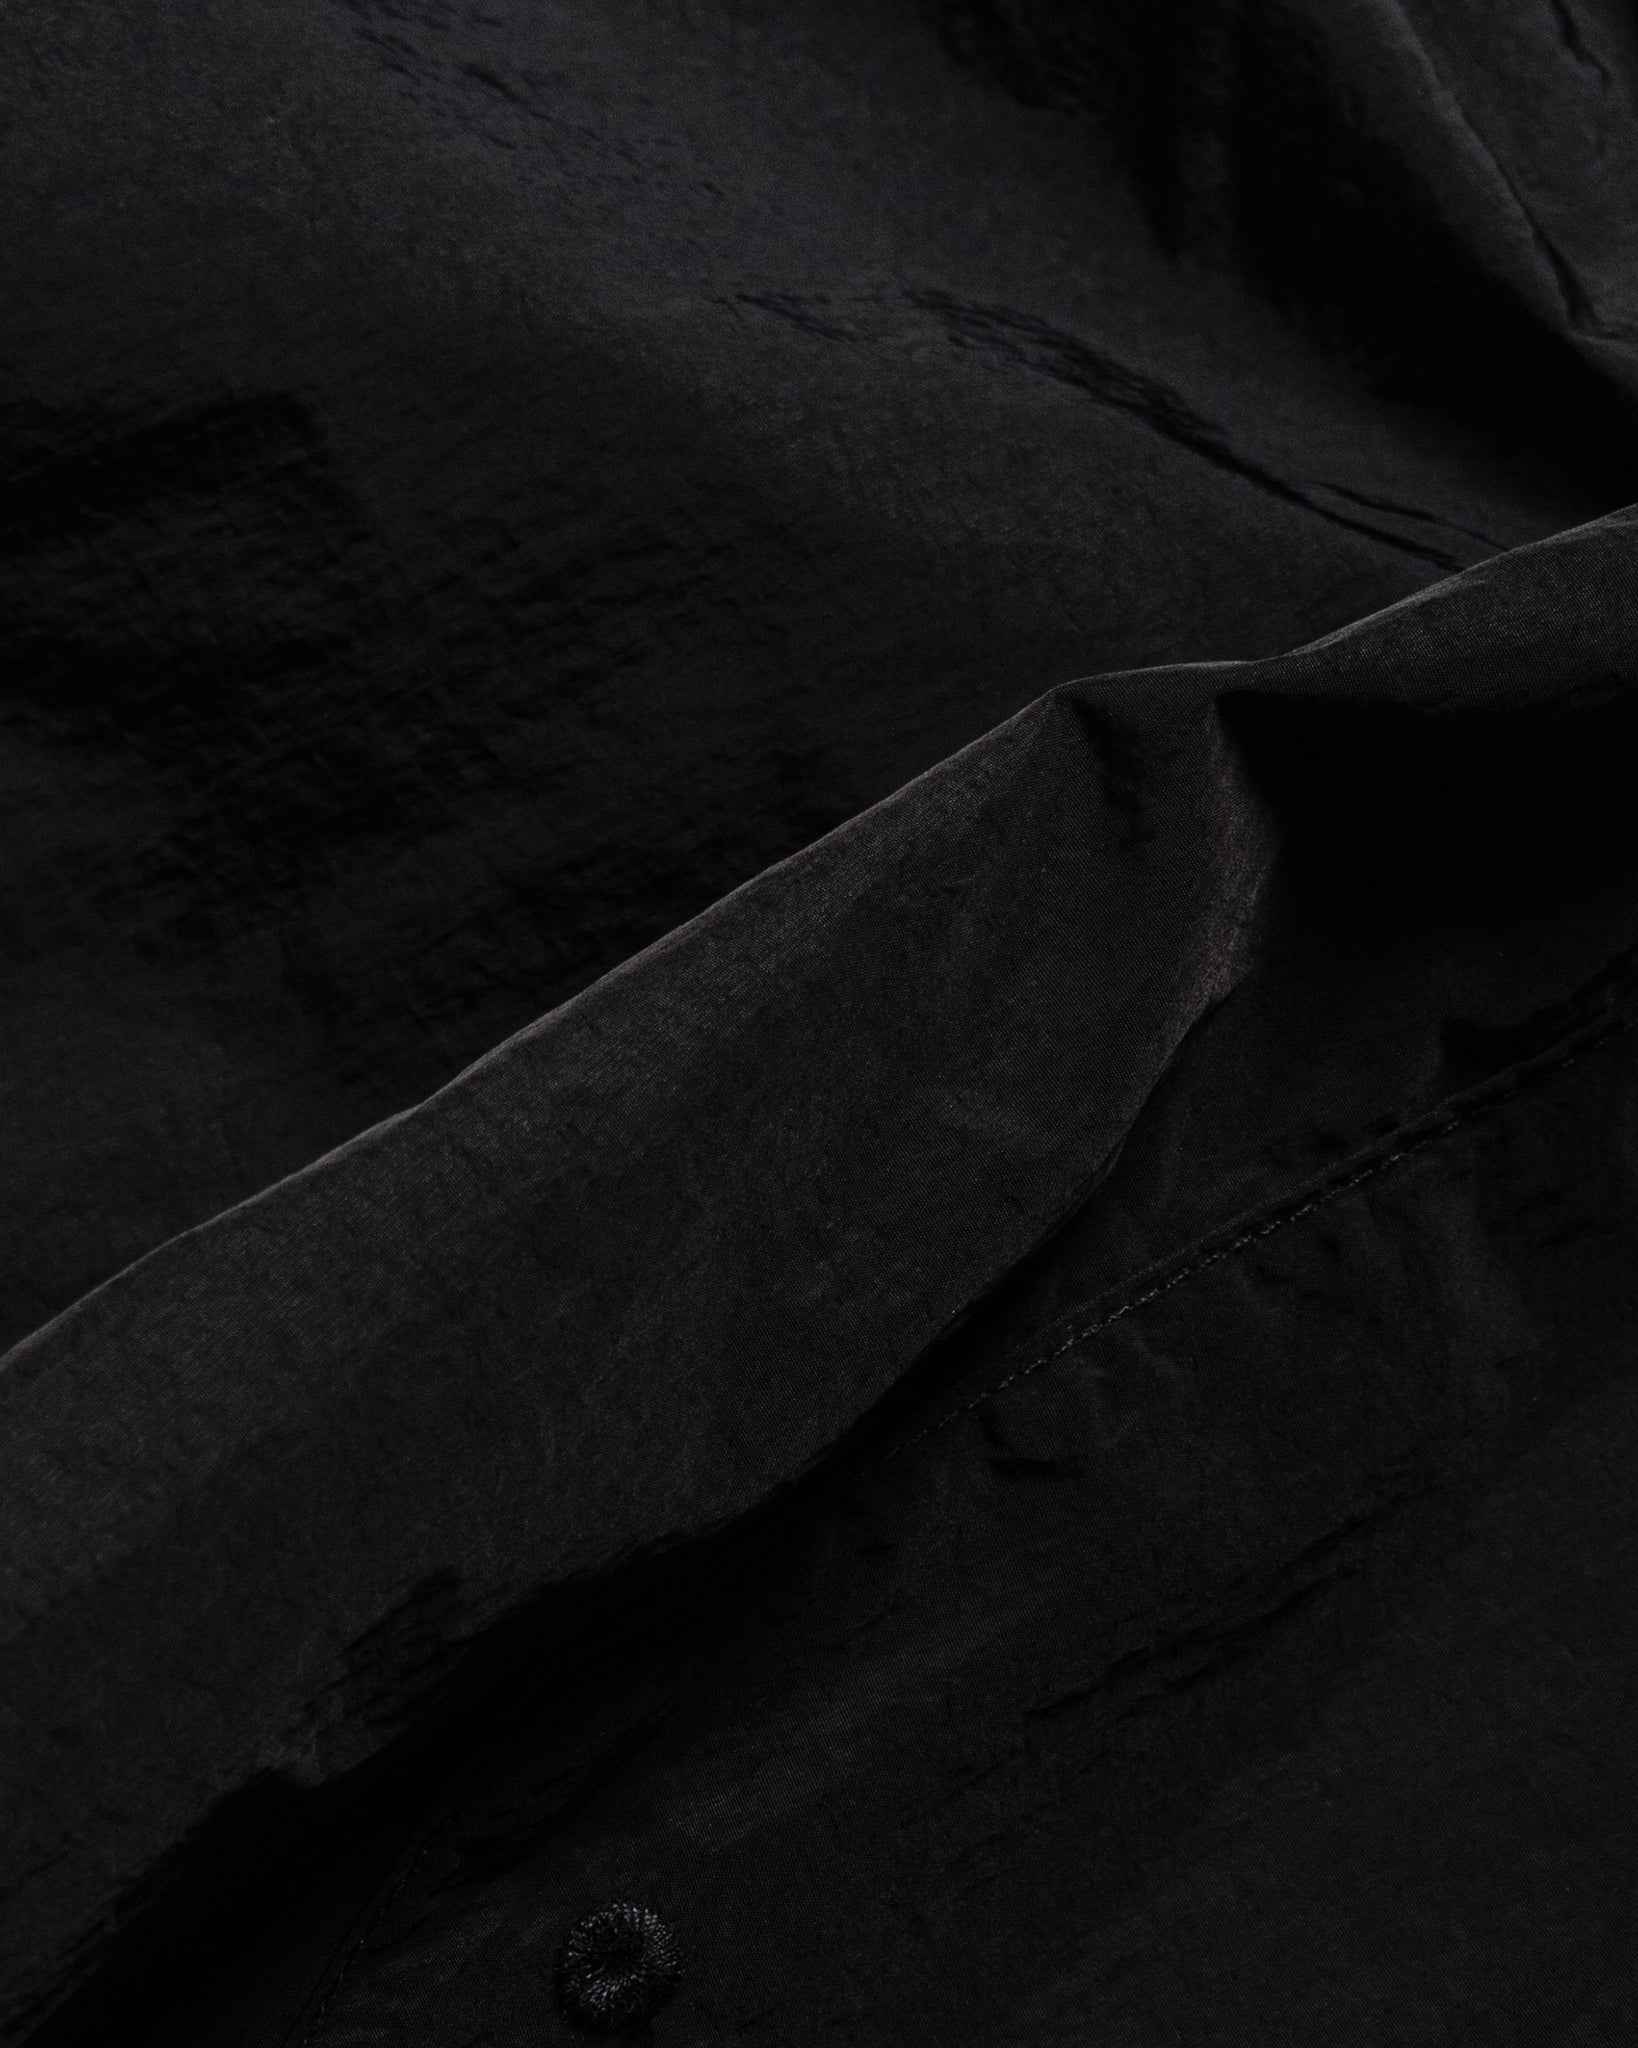 Carhartt W.I.P. Tobes Swim Trunk Black fabric